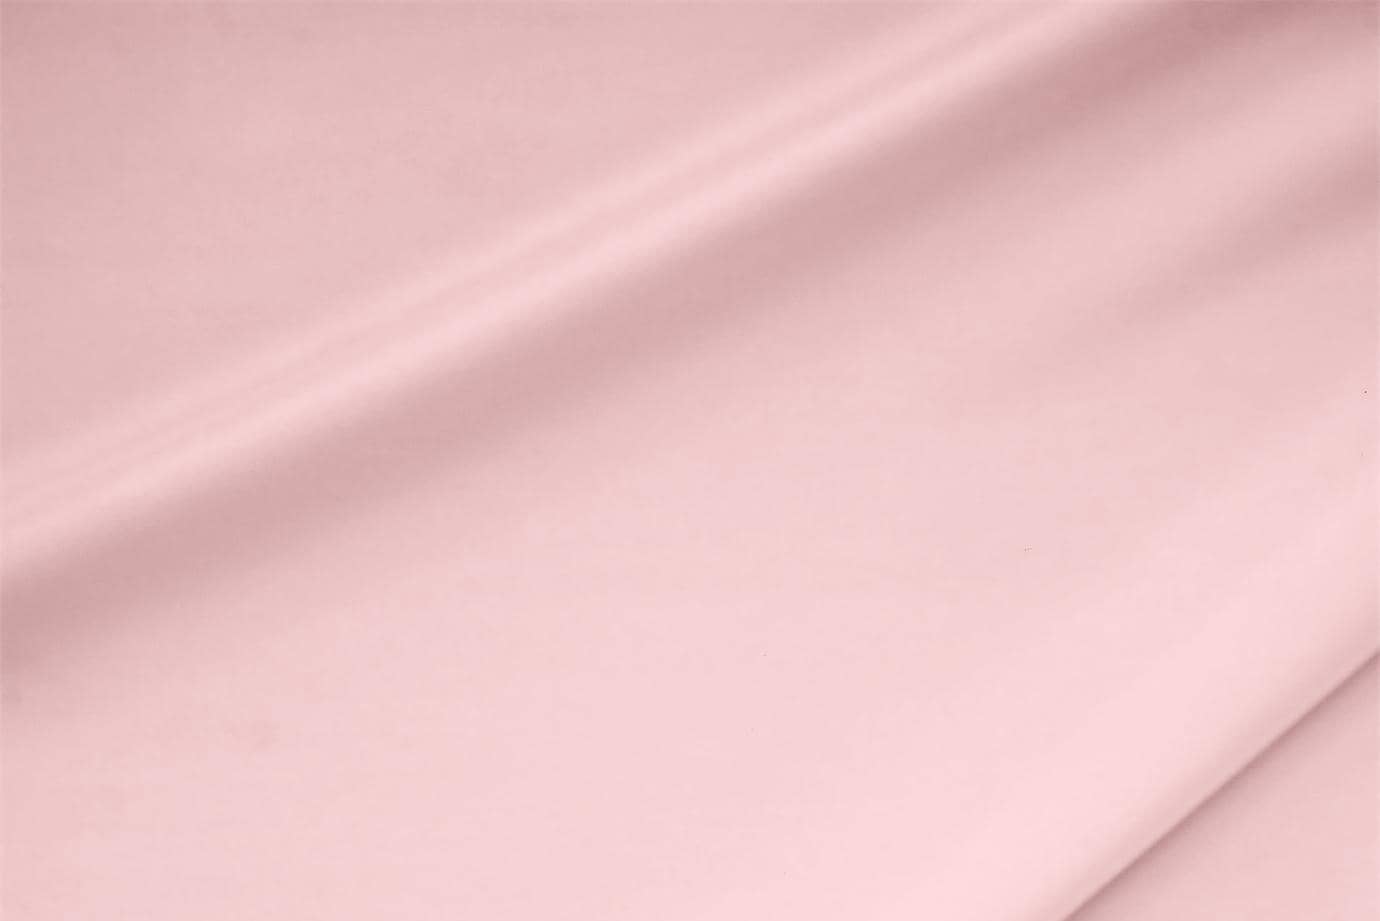 Tessuto Crêpe de Chine Stretch Rosa Confetto in Seta, Stretch per abbigliamento